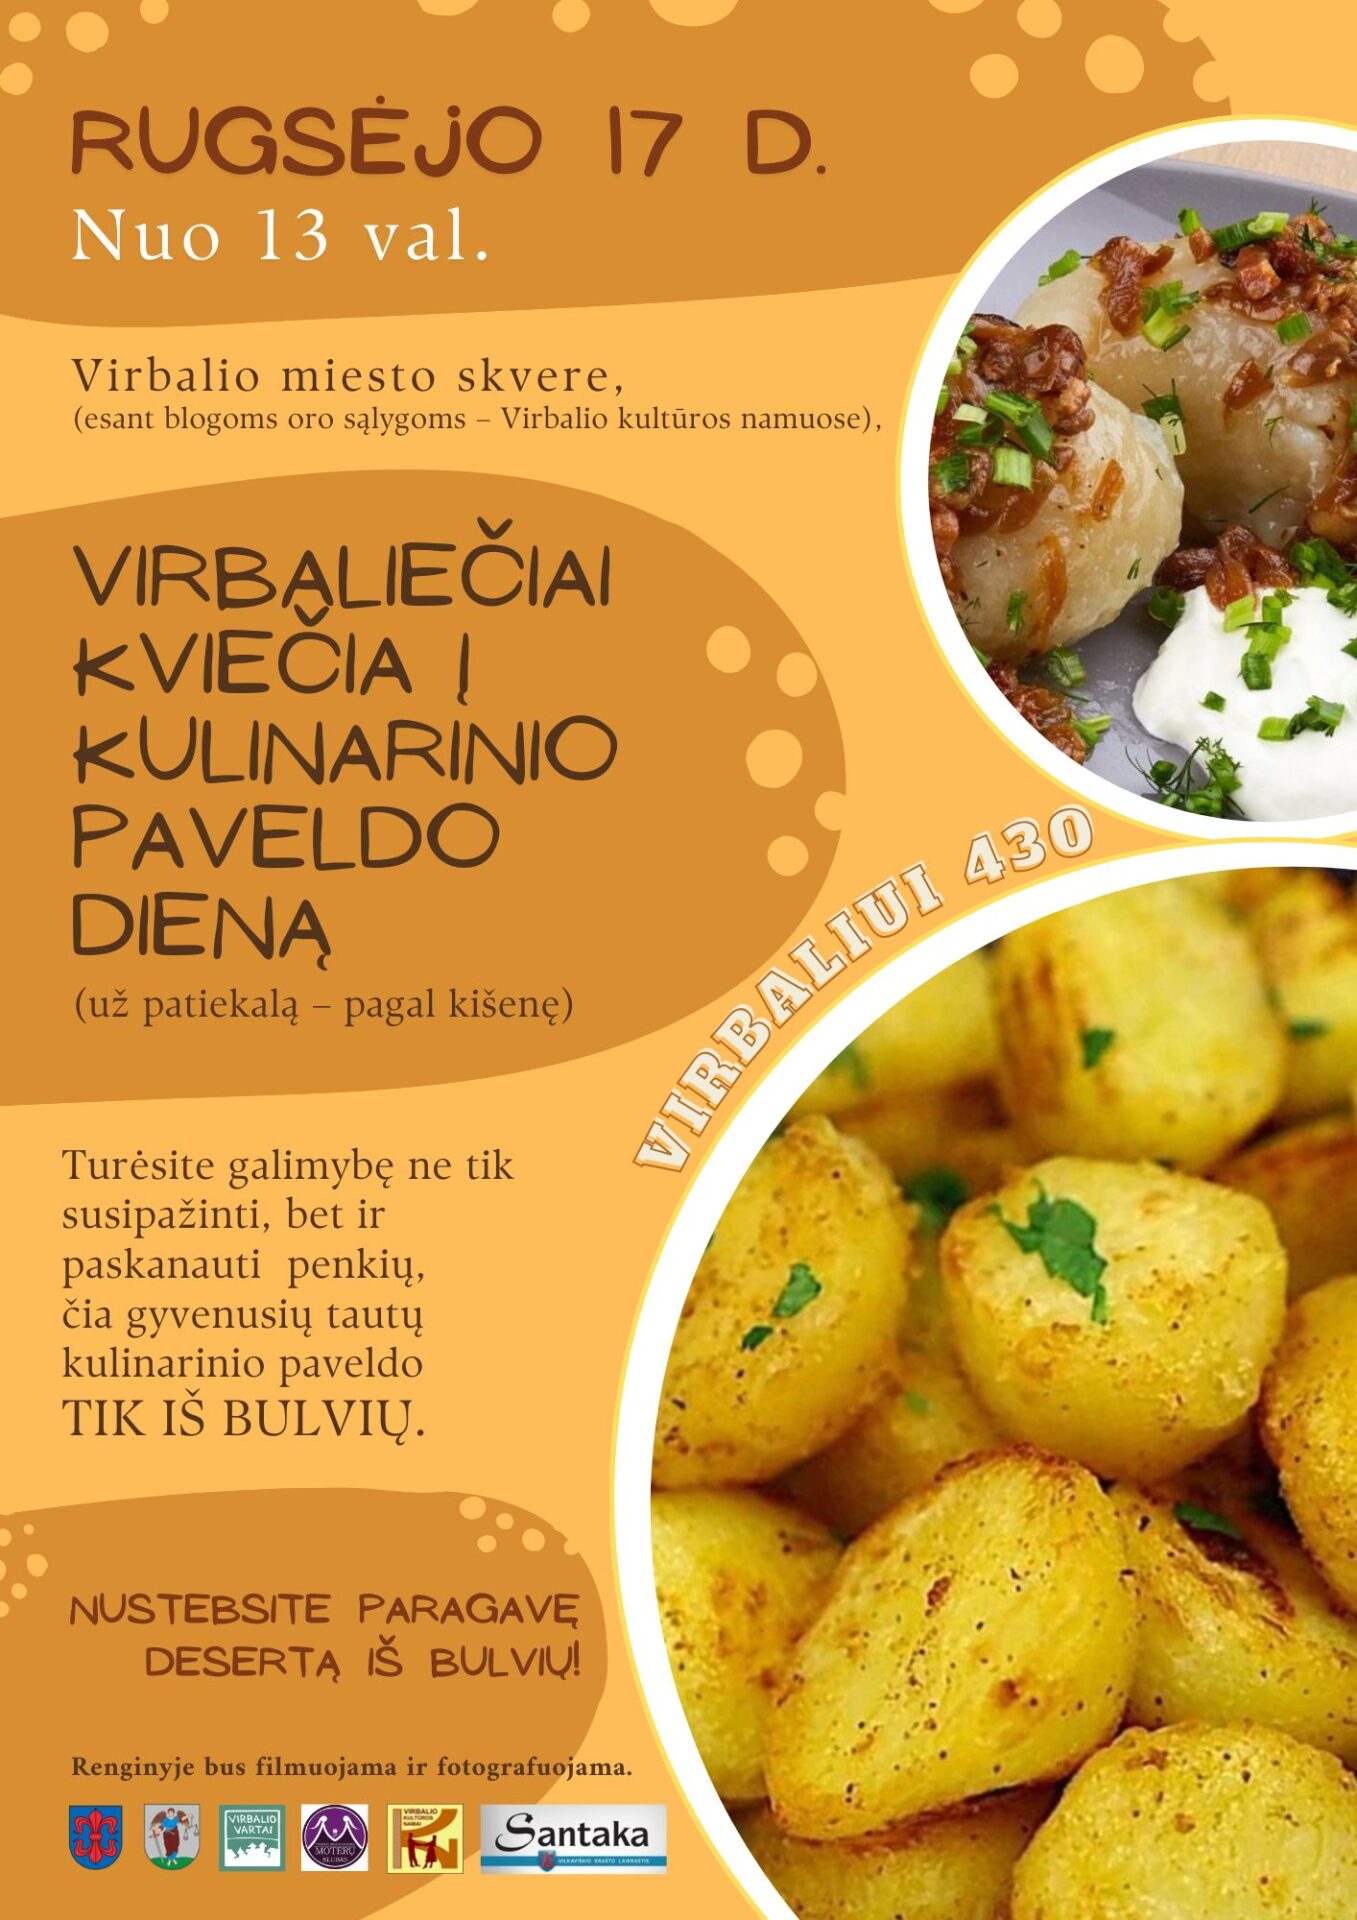 Kulinarinio paveldo diena Virbalyje